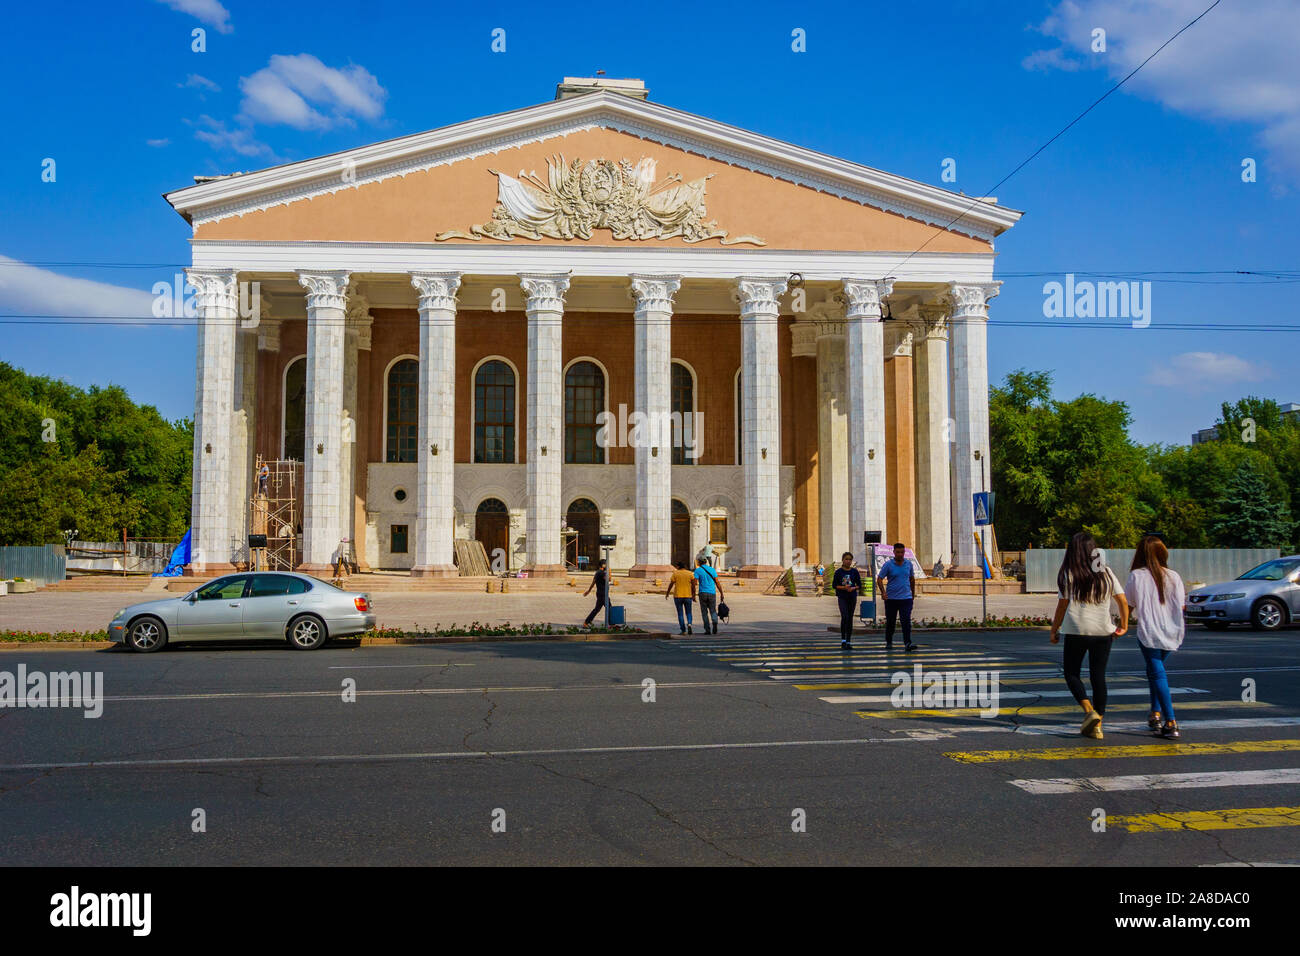 Bishkek, Capital of Kyrgyzstan in Central Asia Stock Photo